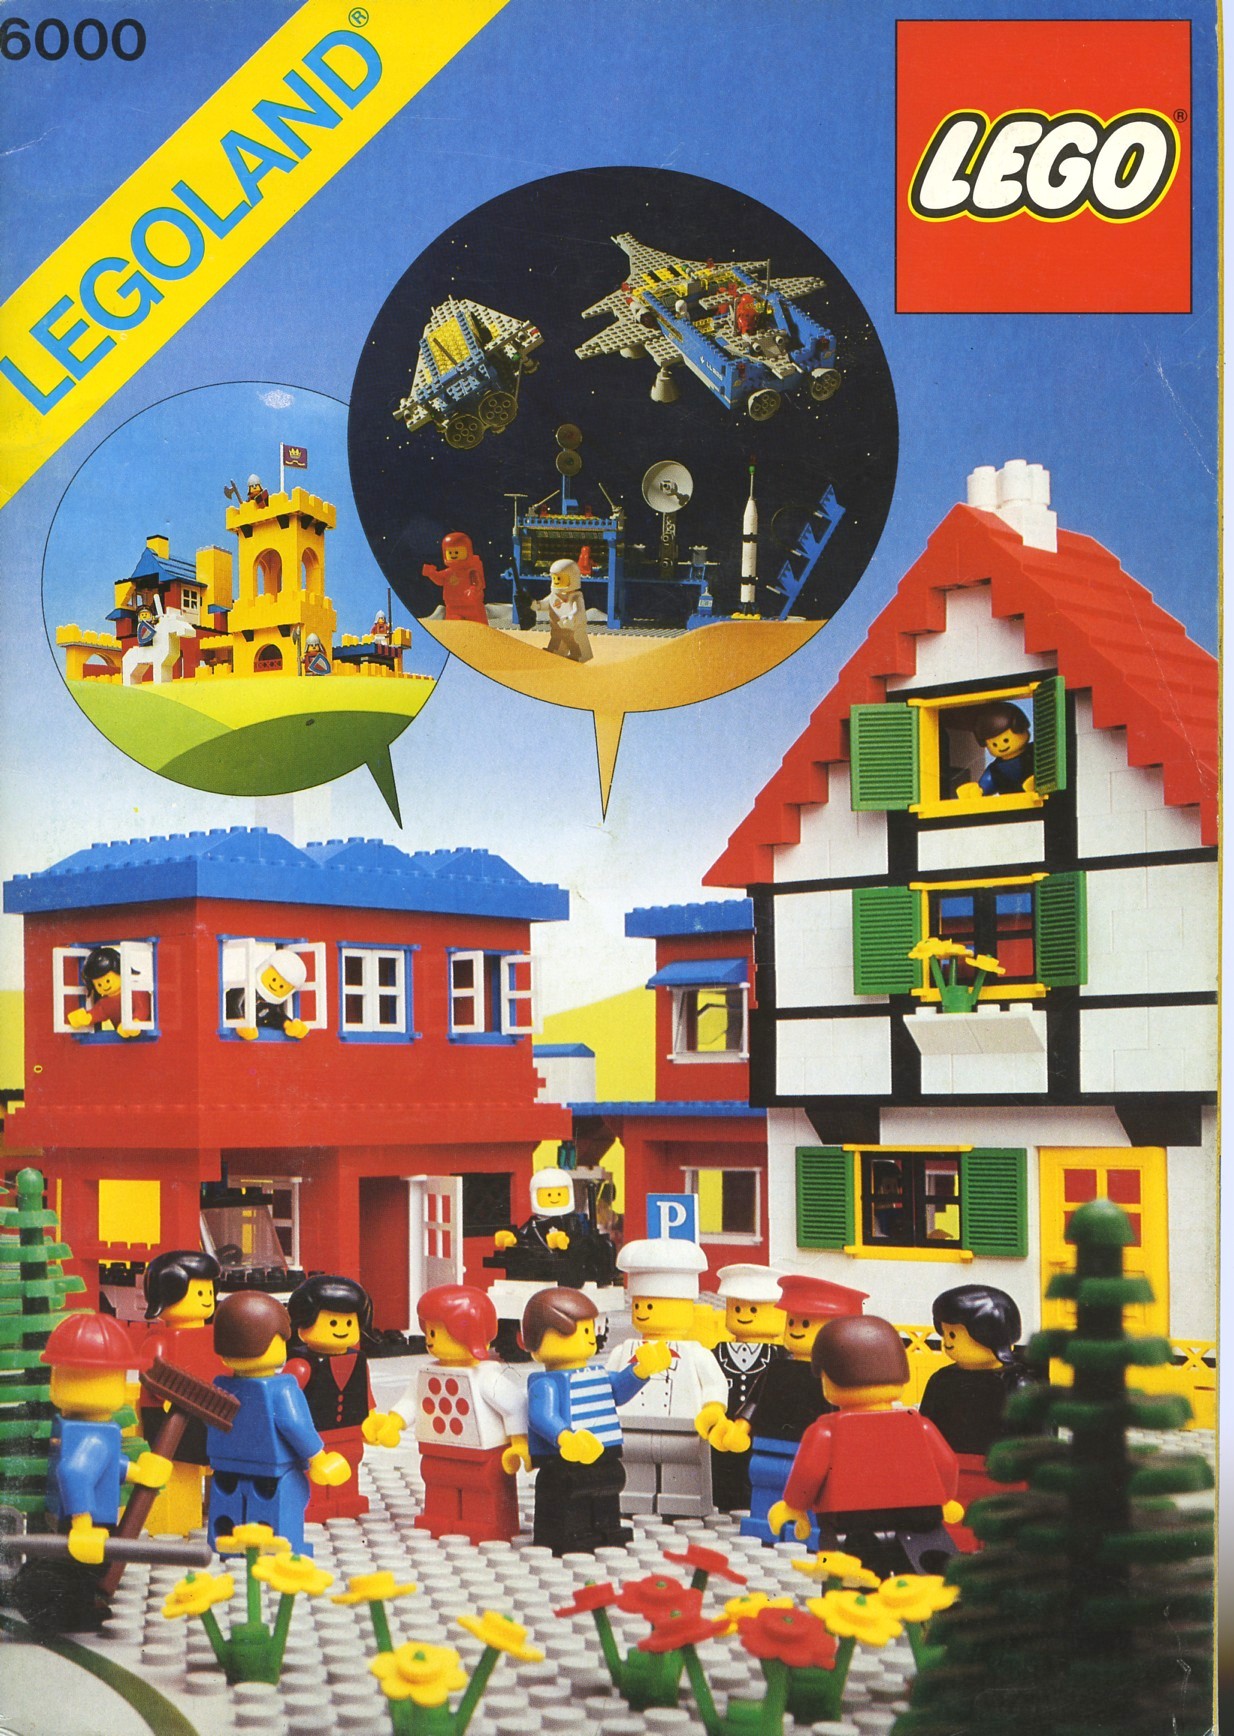 LEGO IDEAS - Member Contributions